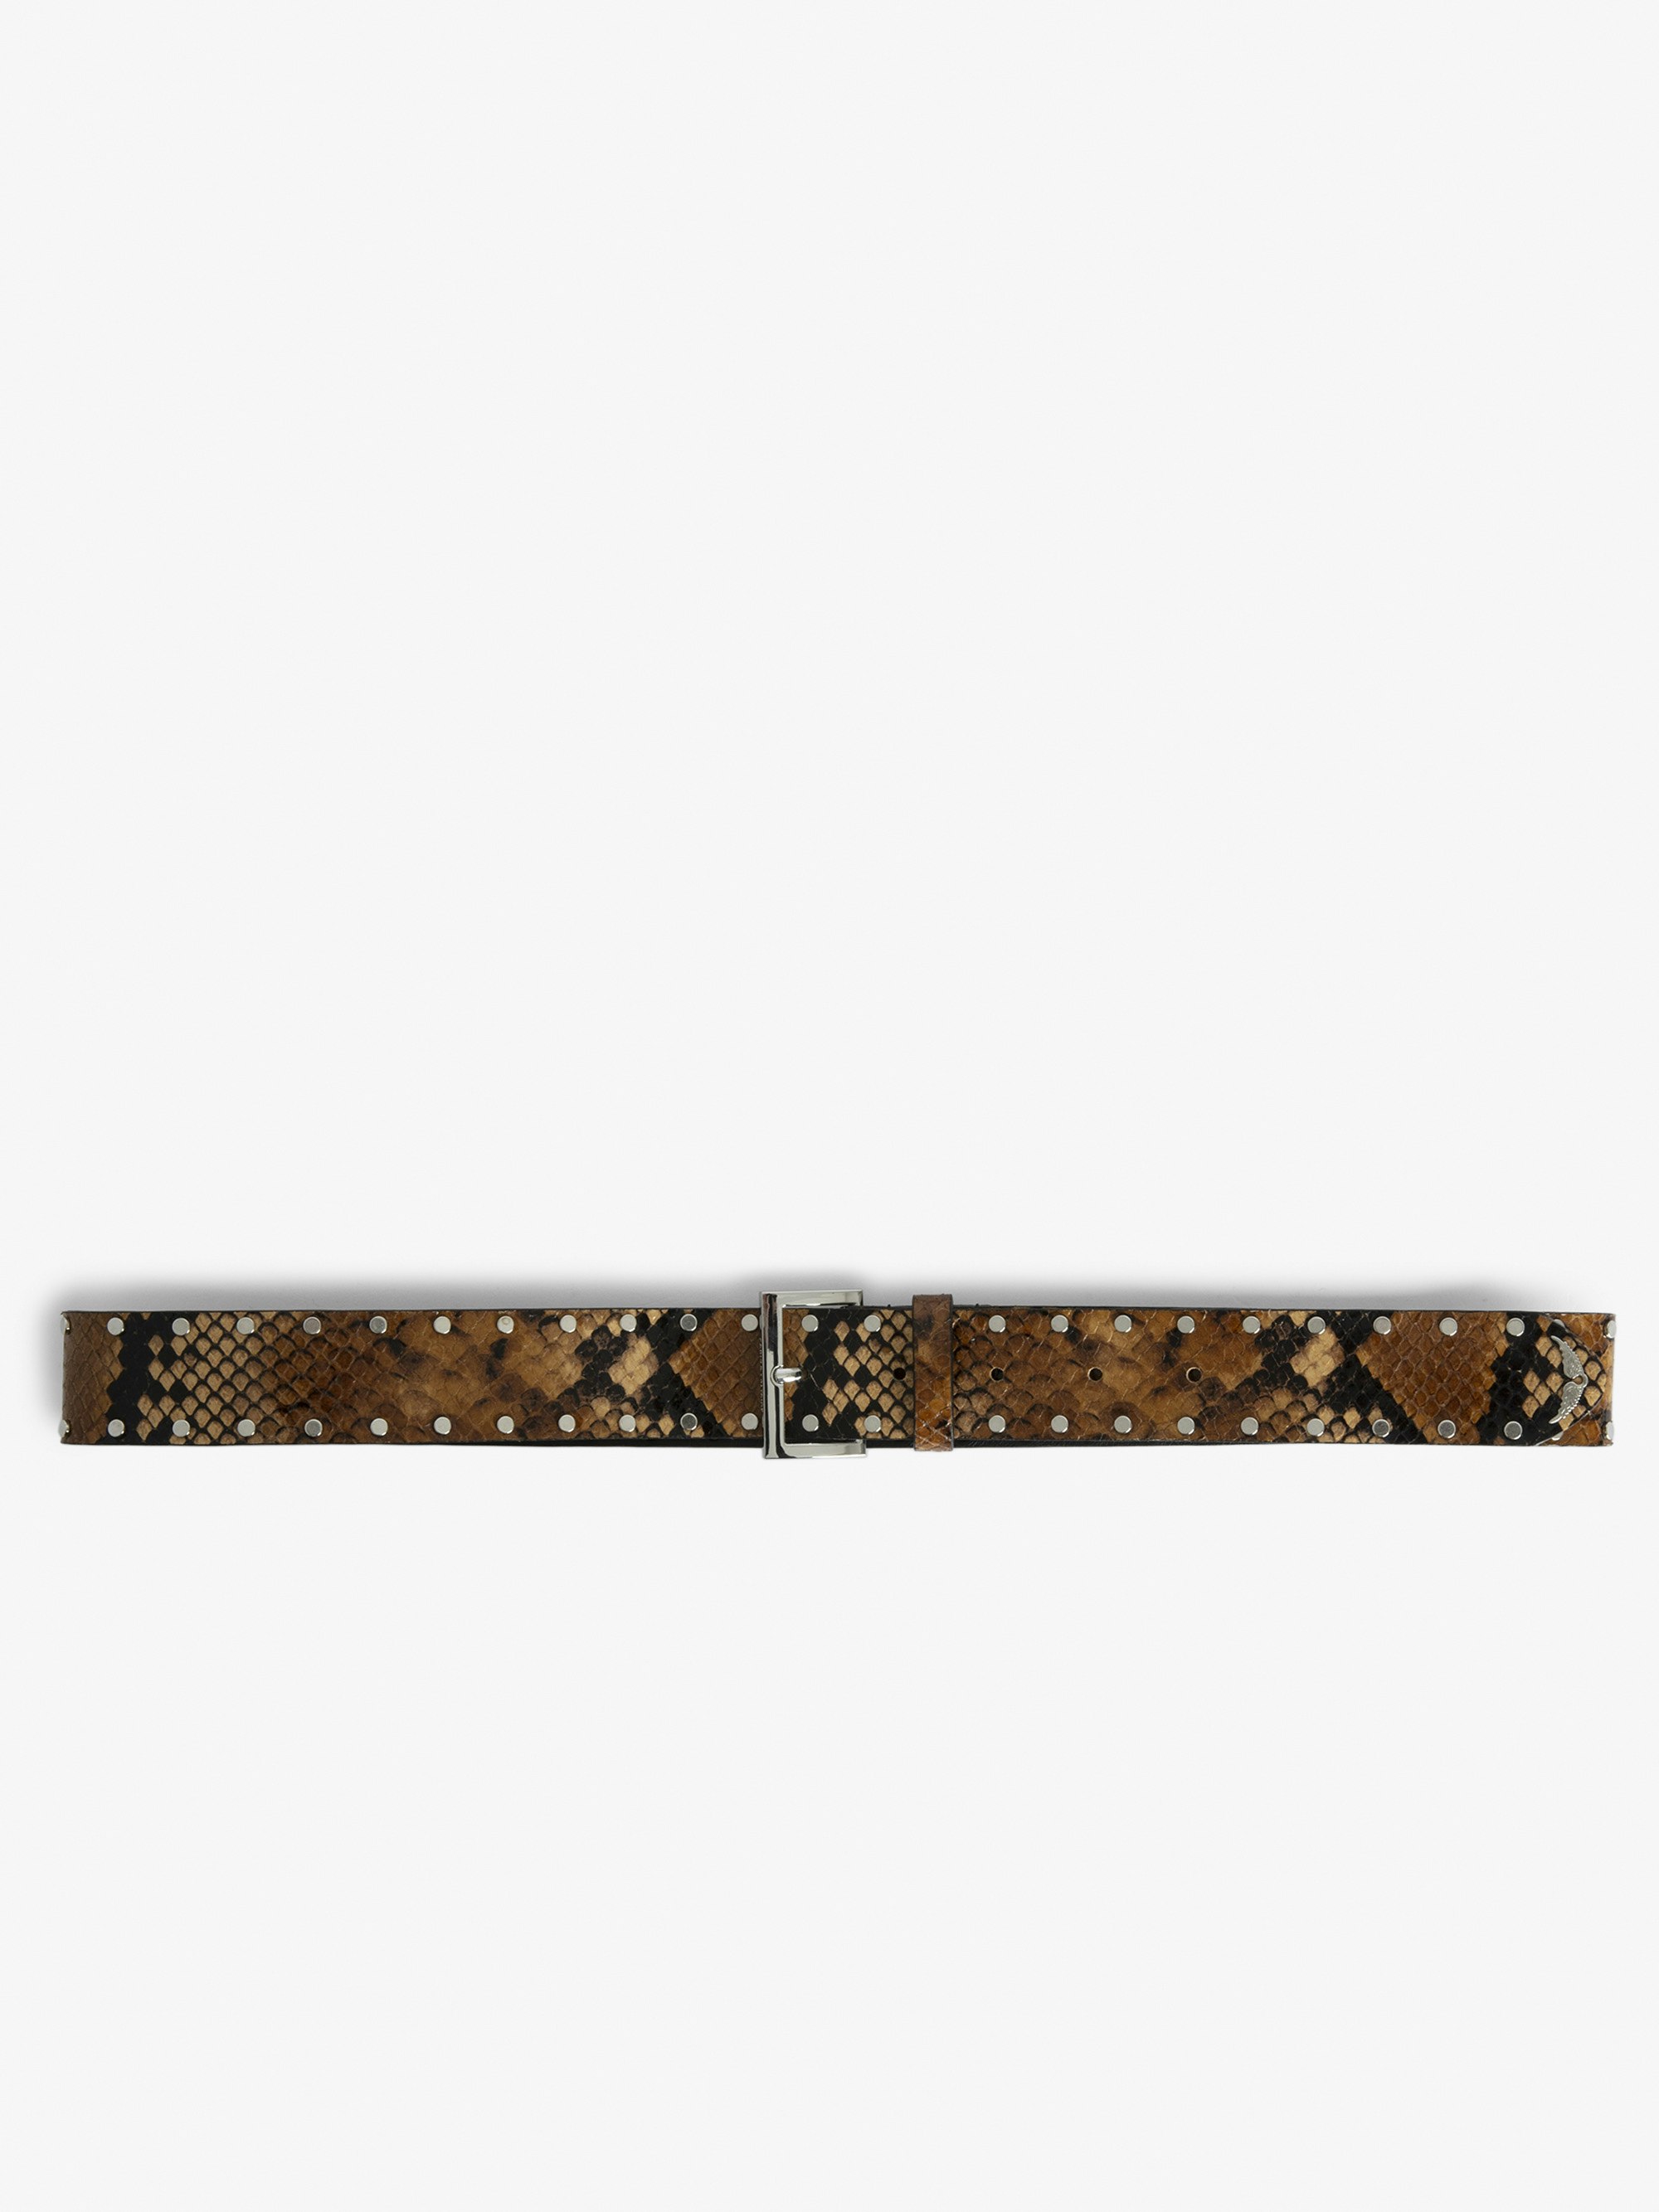 Cinturón Starlight - Cinturón de piel con efecto serpiente de color marrón decorado con tachuelas.